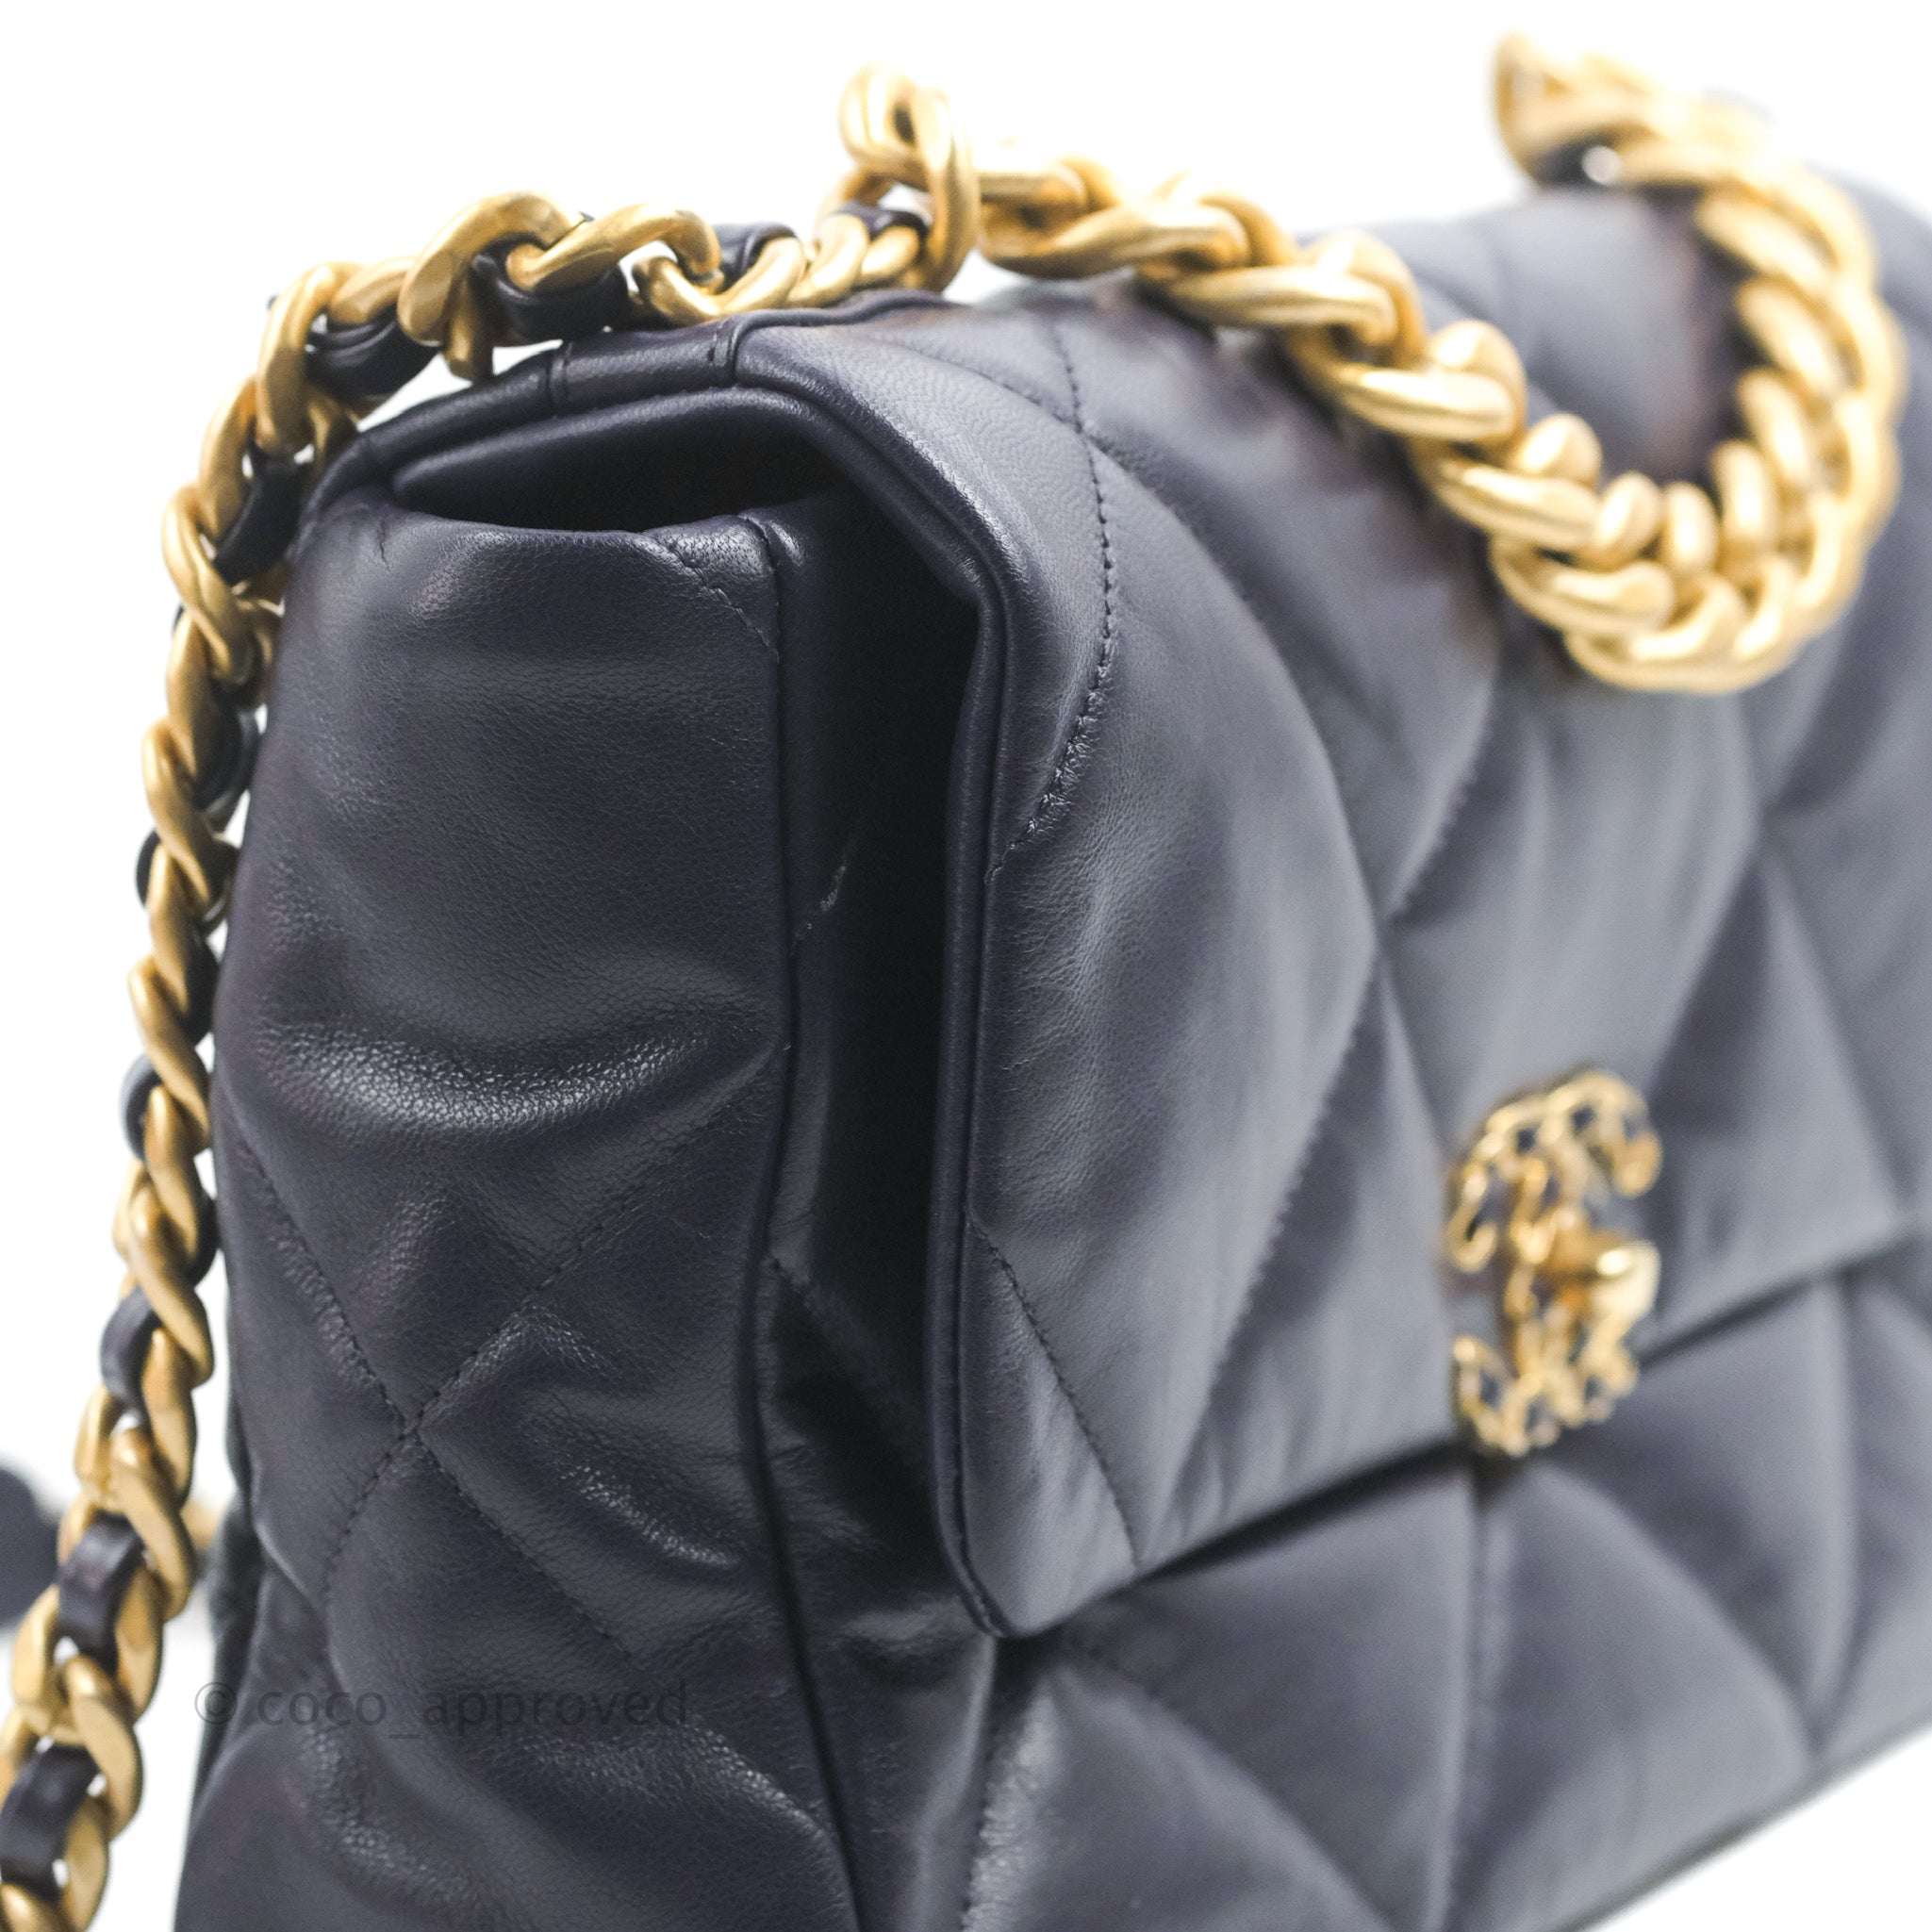 CHANEL+19+Shoulder+Bag+Gold+Leather for sale online